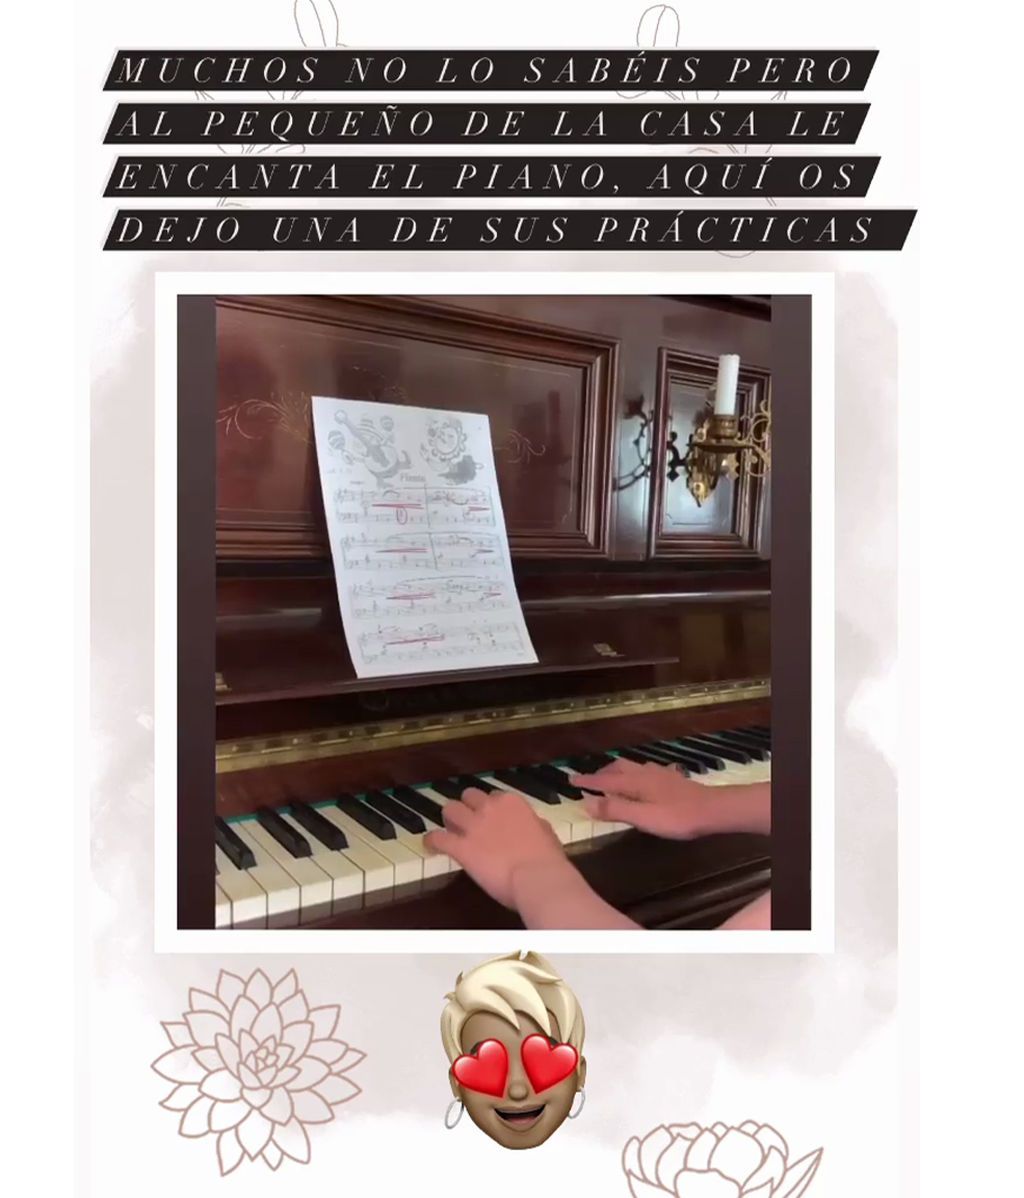 Las prácticas del hijo de Ana María Aldón y Ortega Cano al piano